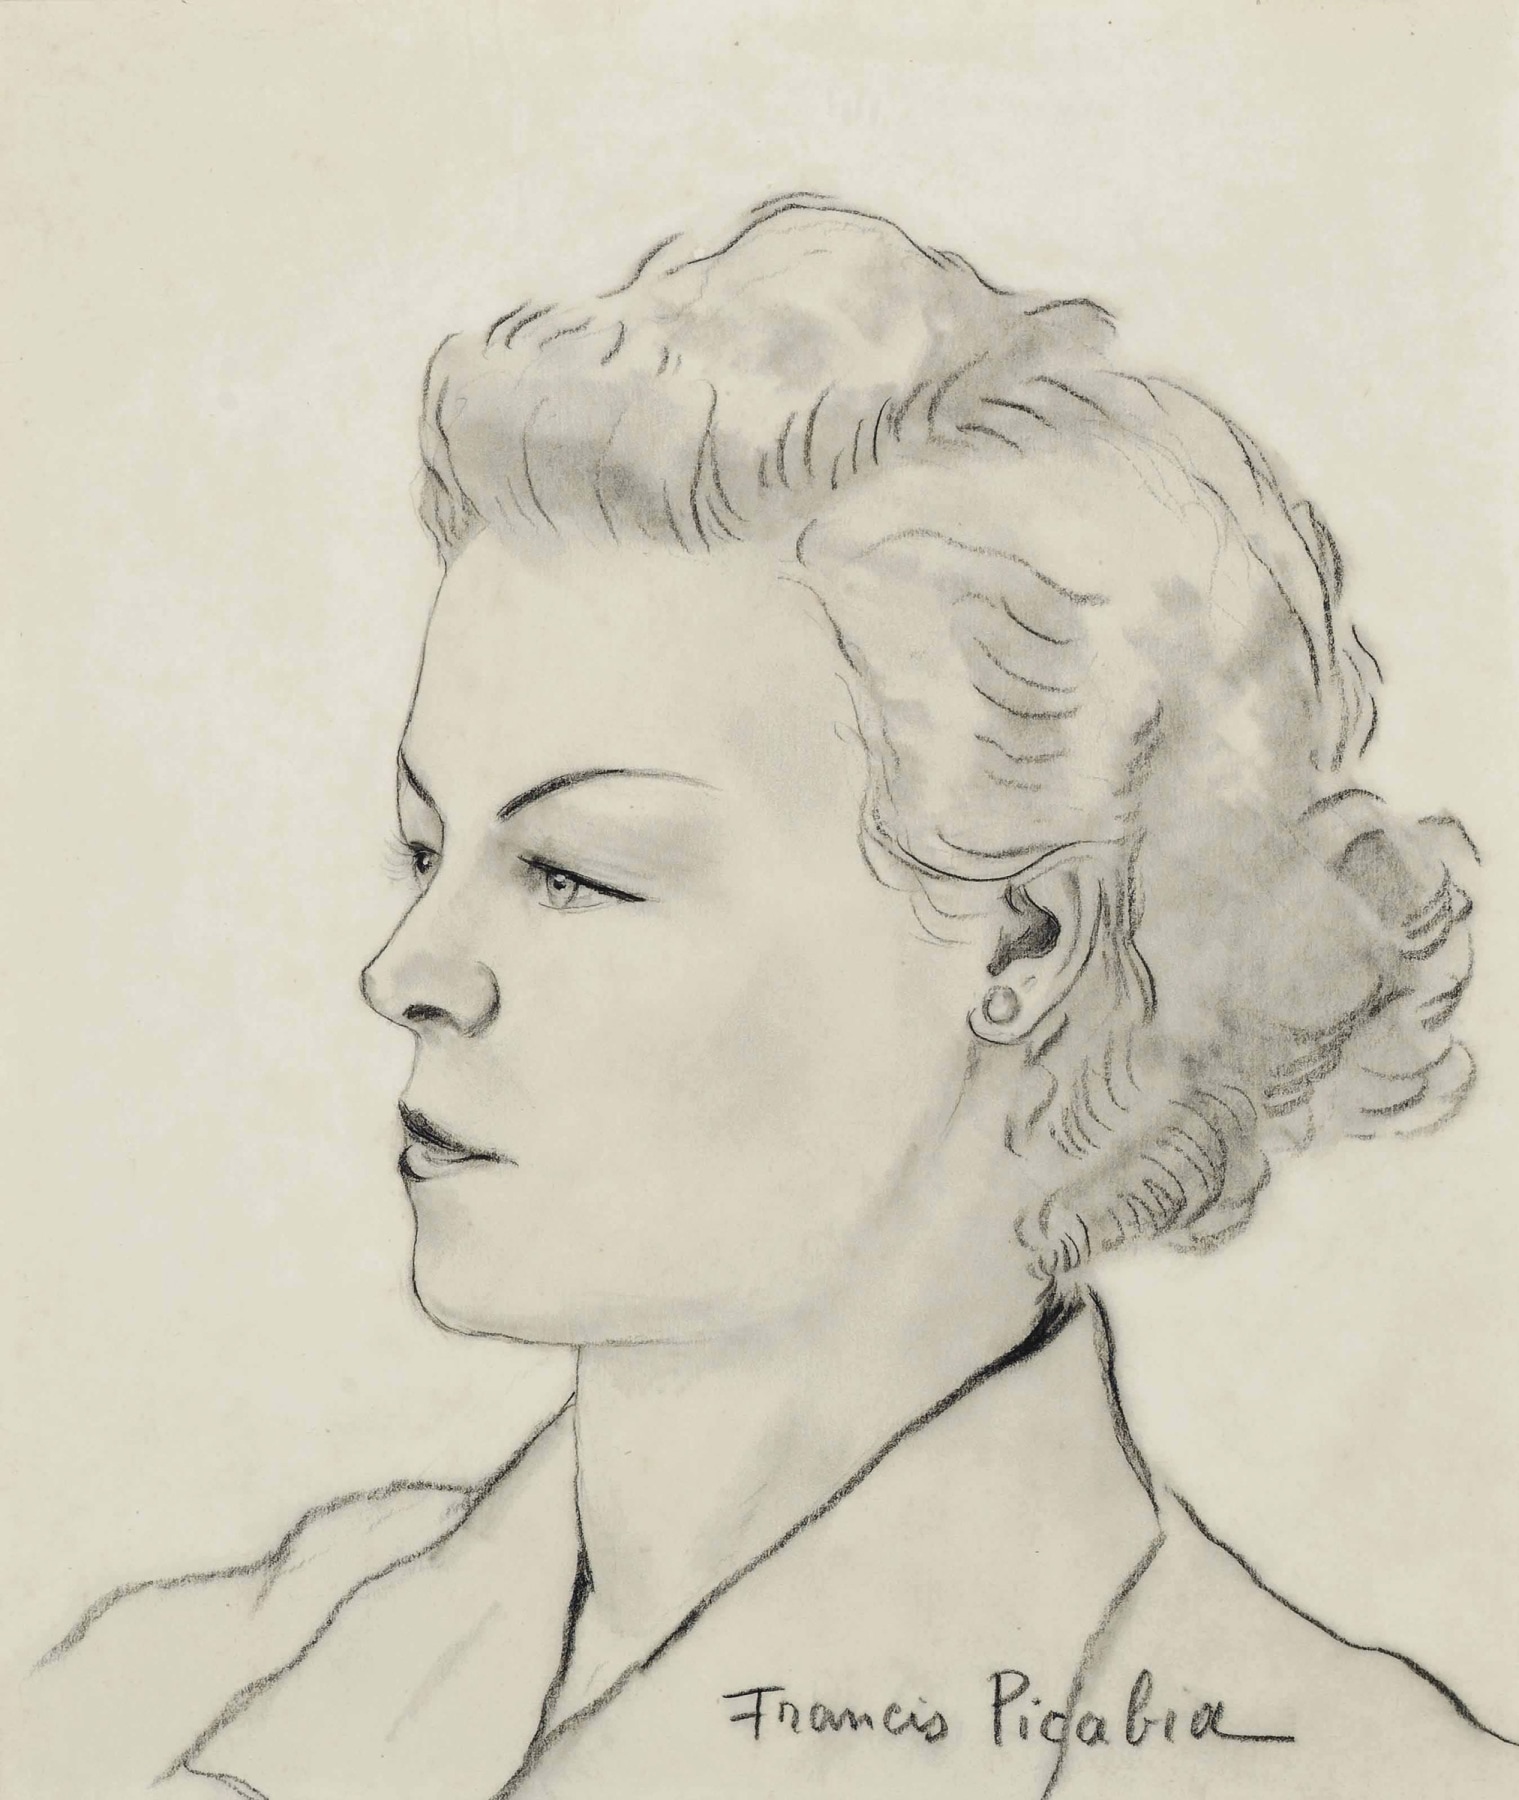 Francis Picabia

&amp;ldquo;Untitled (Visage de femme)&amp;rdquo;, ca. 1940&amp;ndash;1942

Pencil, gouache on paper

14 1/2 x 12 1/2 inches

37 x 31.5 cm

PIZ 163